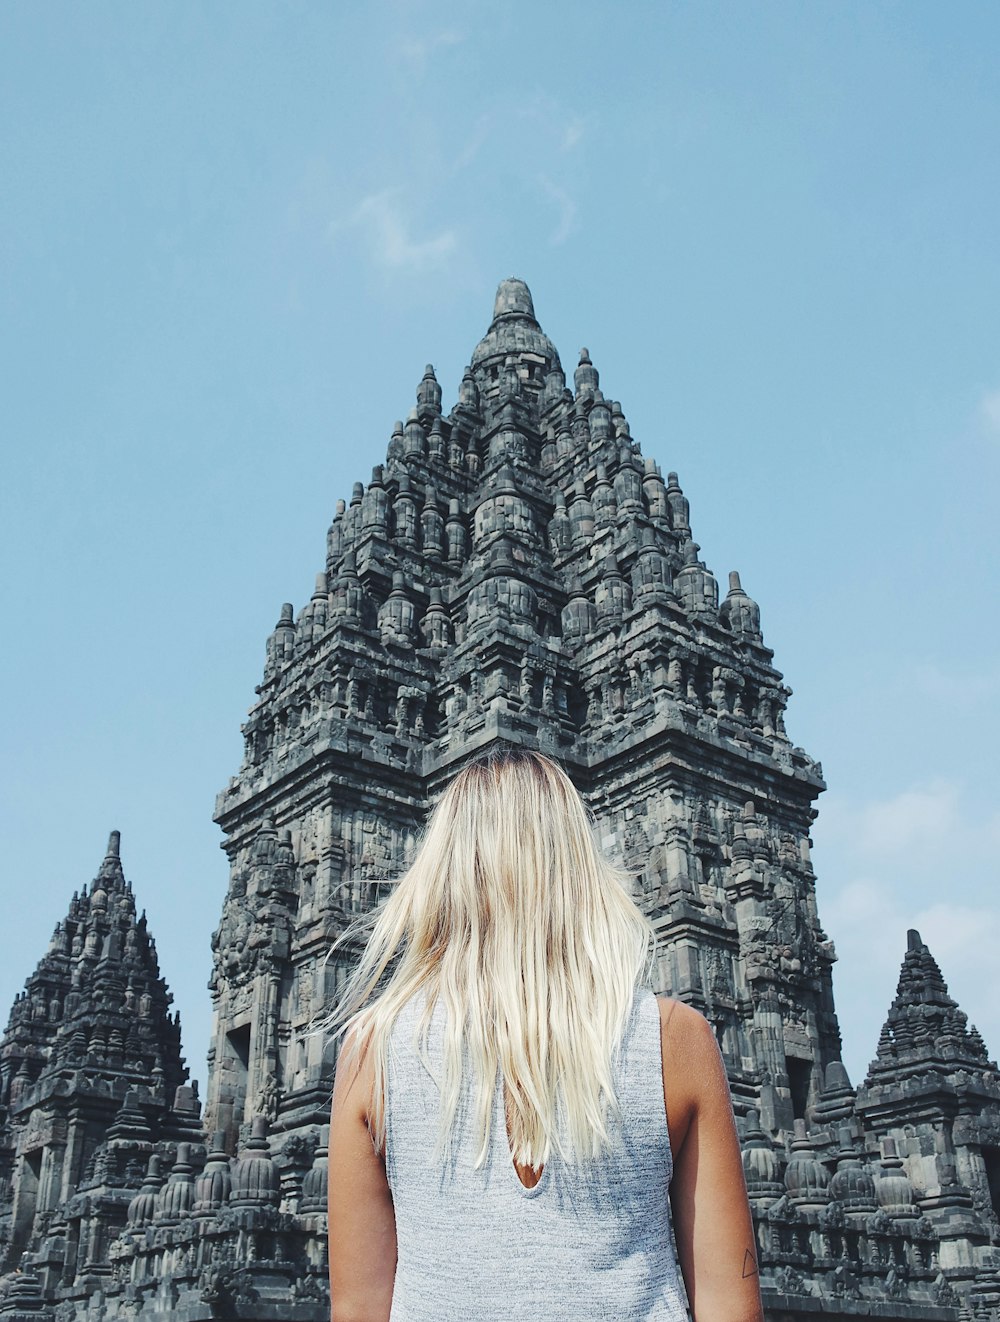 donna dai capelli biondi in piedi davanti al tempio di cemento